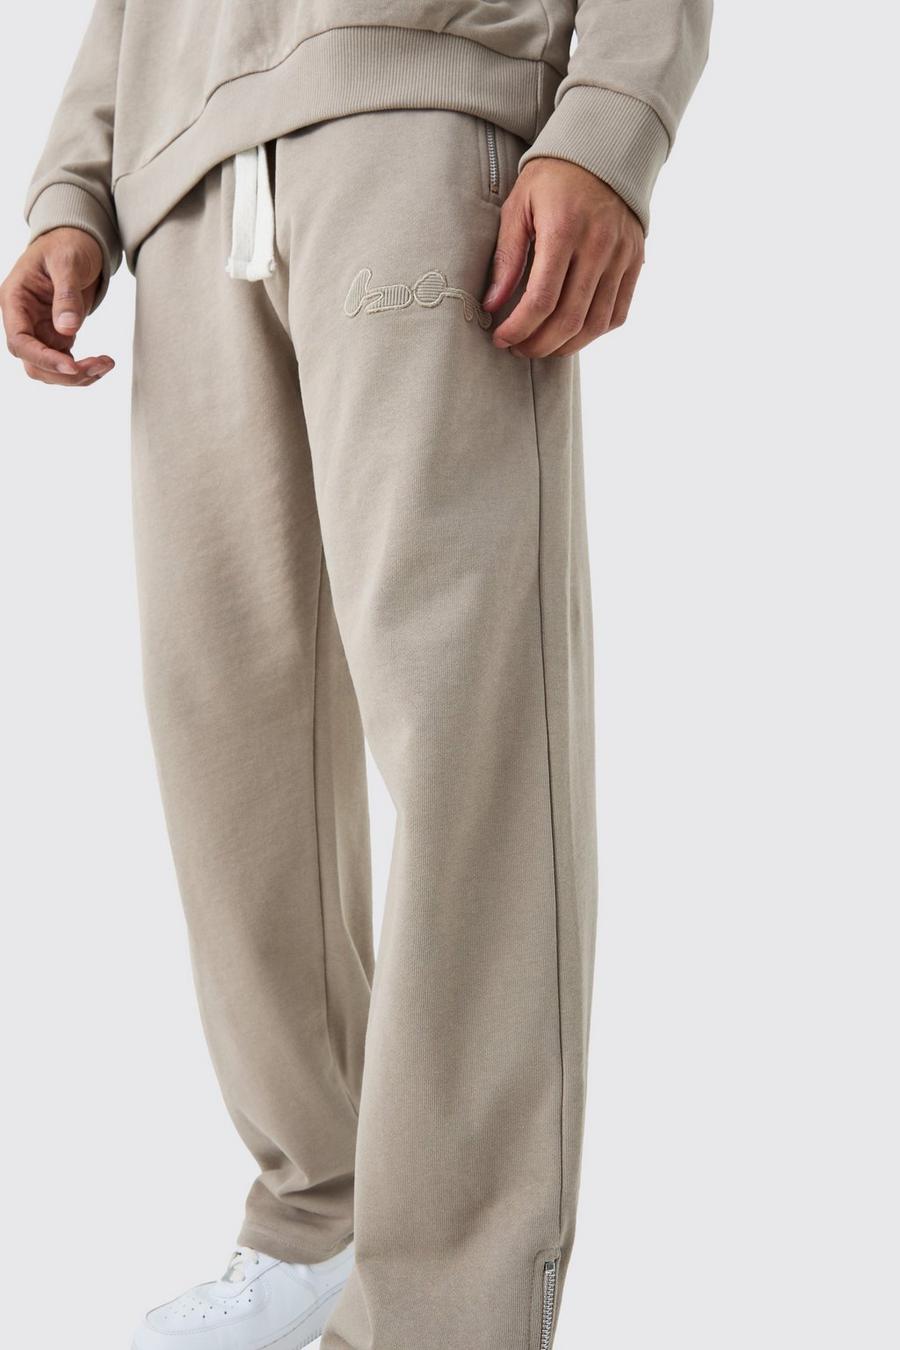 Pantalón deportivo oversize de canalé y tela rizo con aplique y cremallera, Pale grey